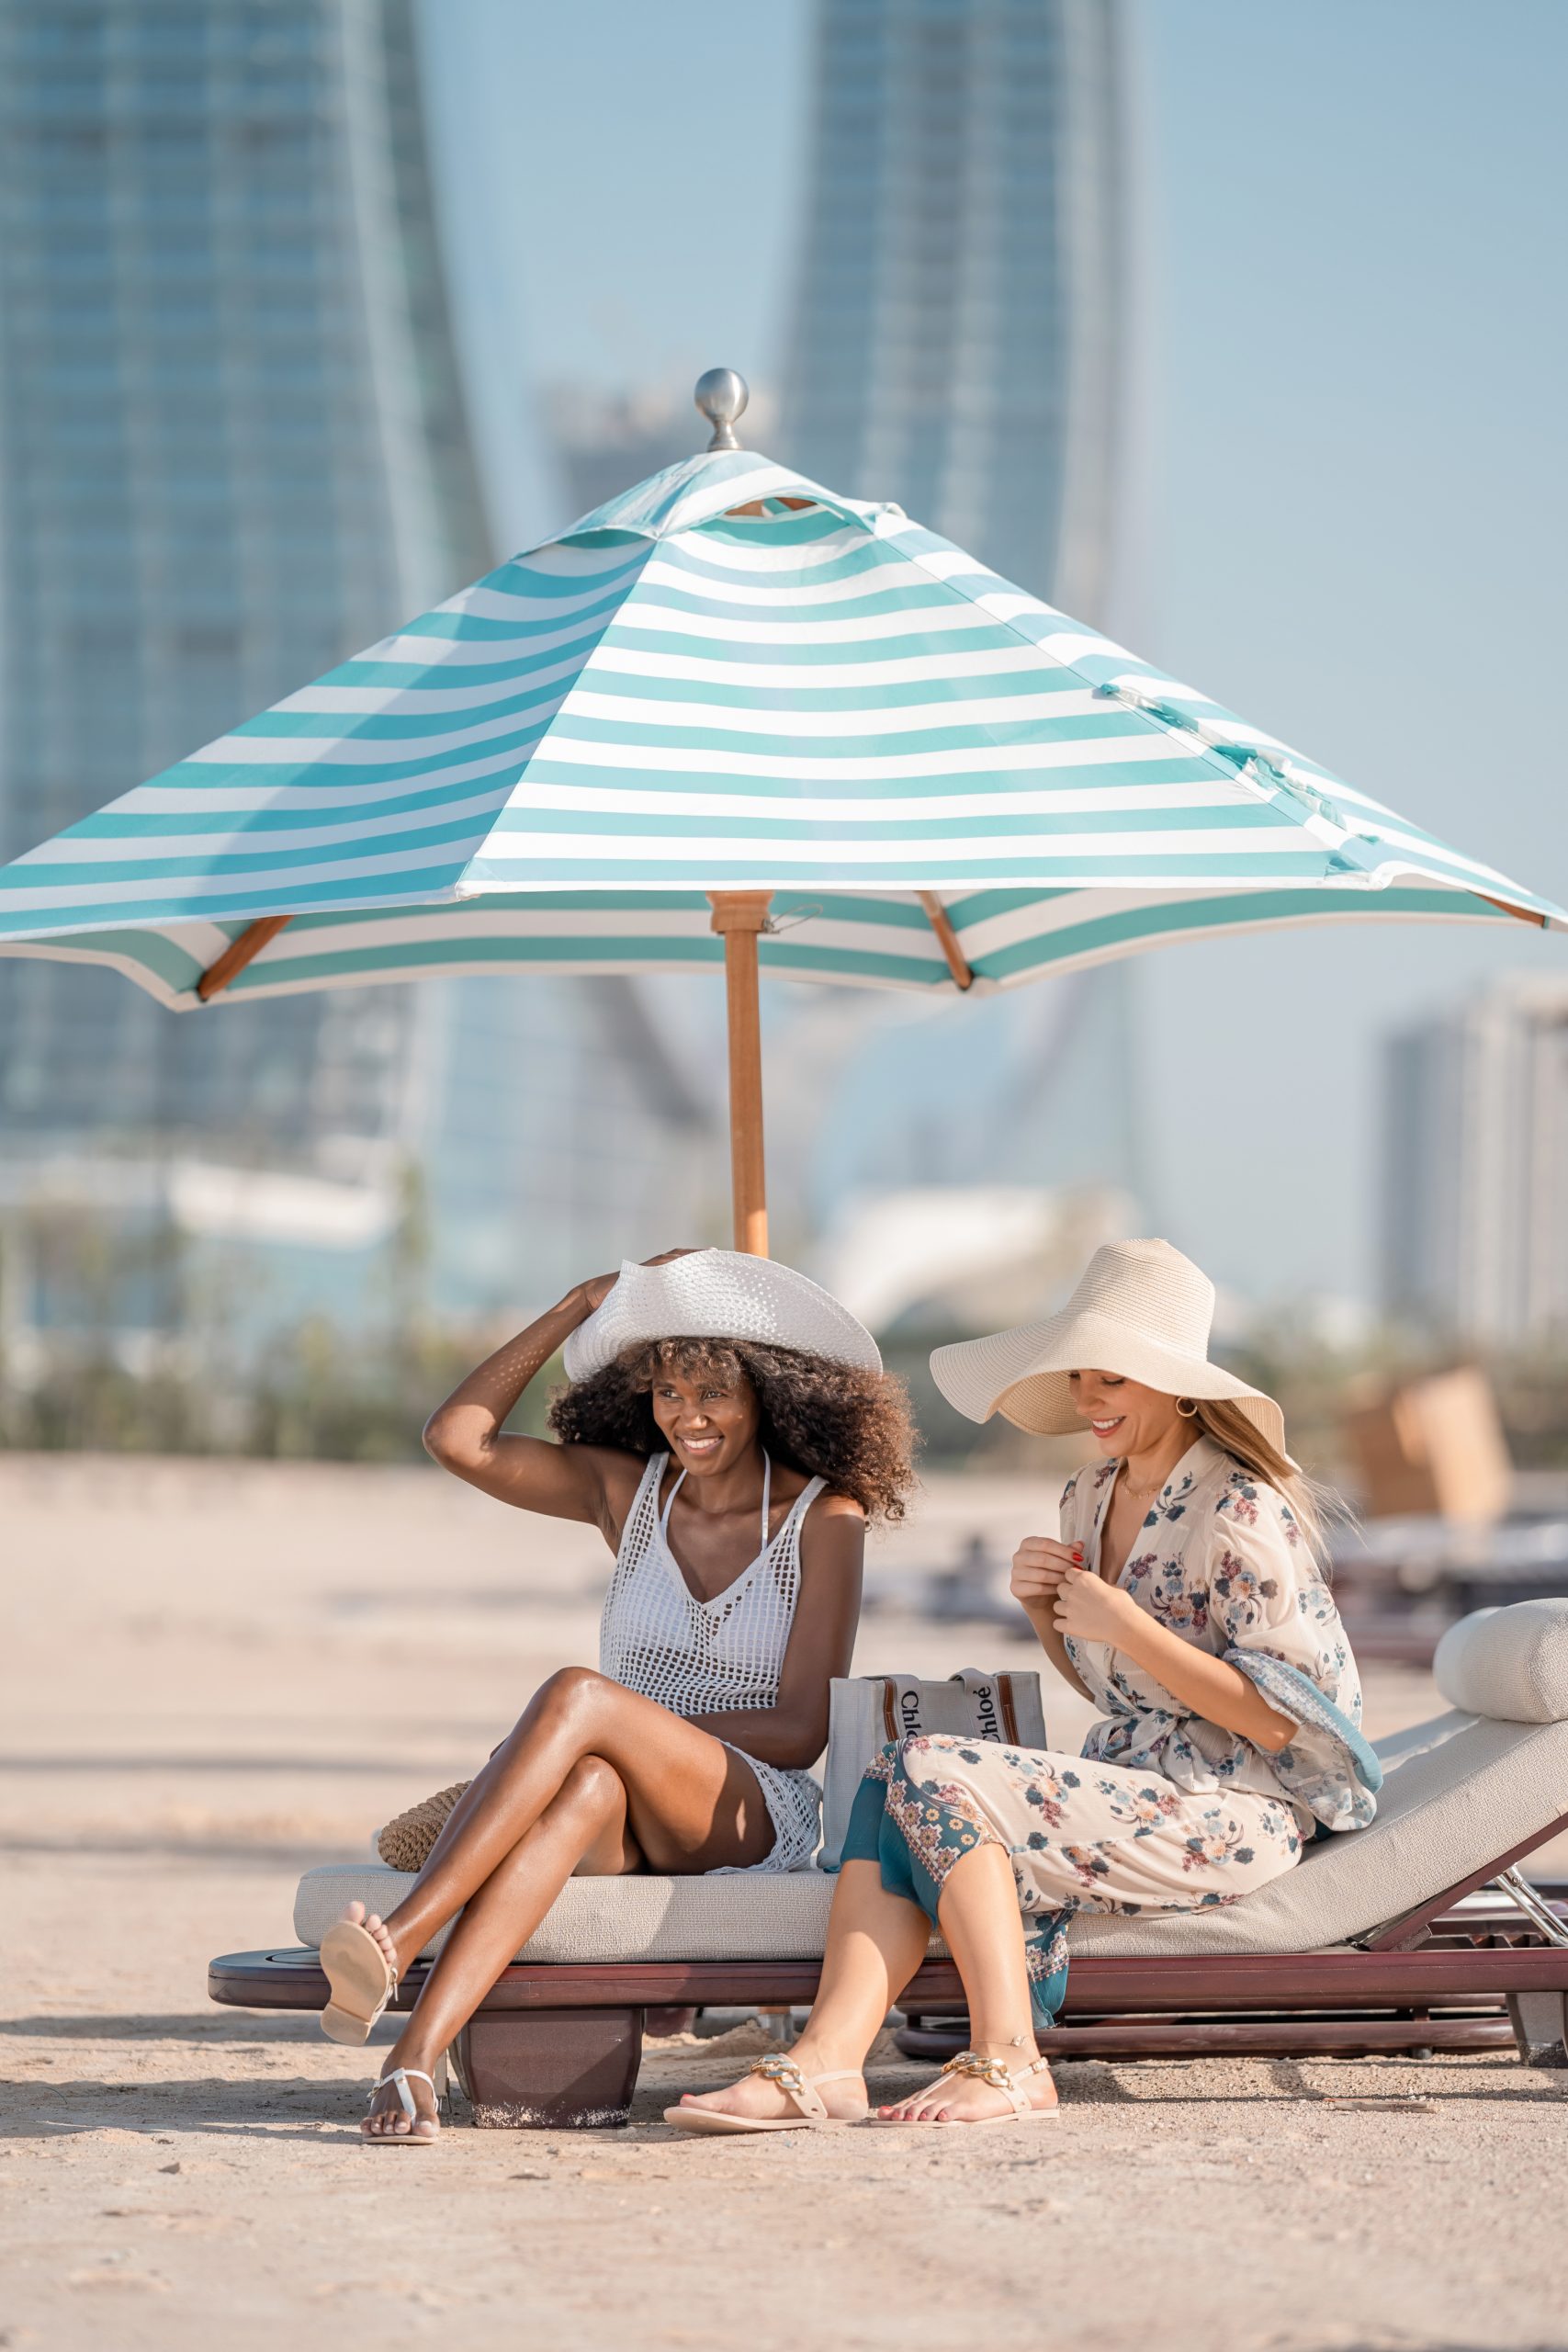 Al Maha Beach Club by Bagatelle Group: A Unique Destination for Unforgettable Experiences